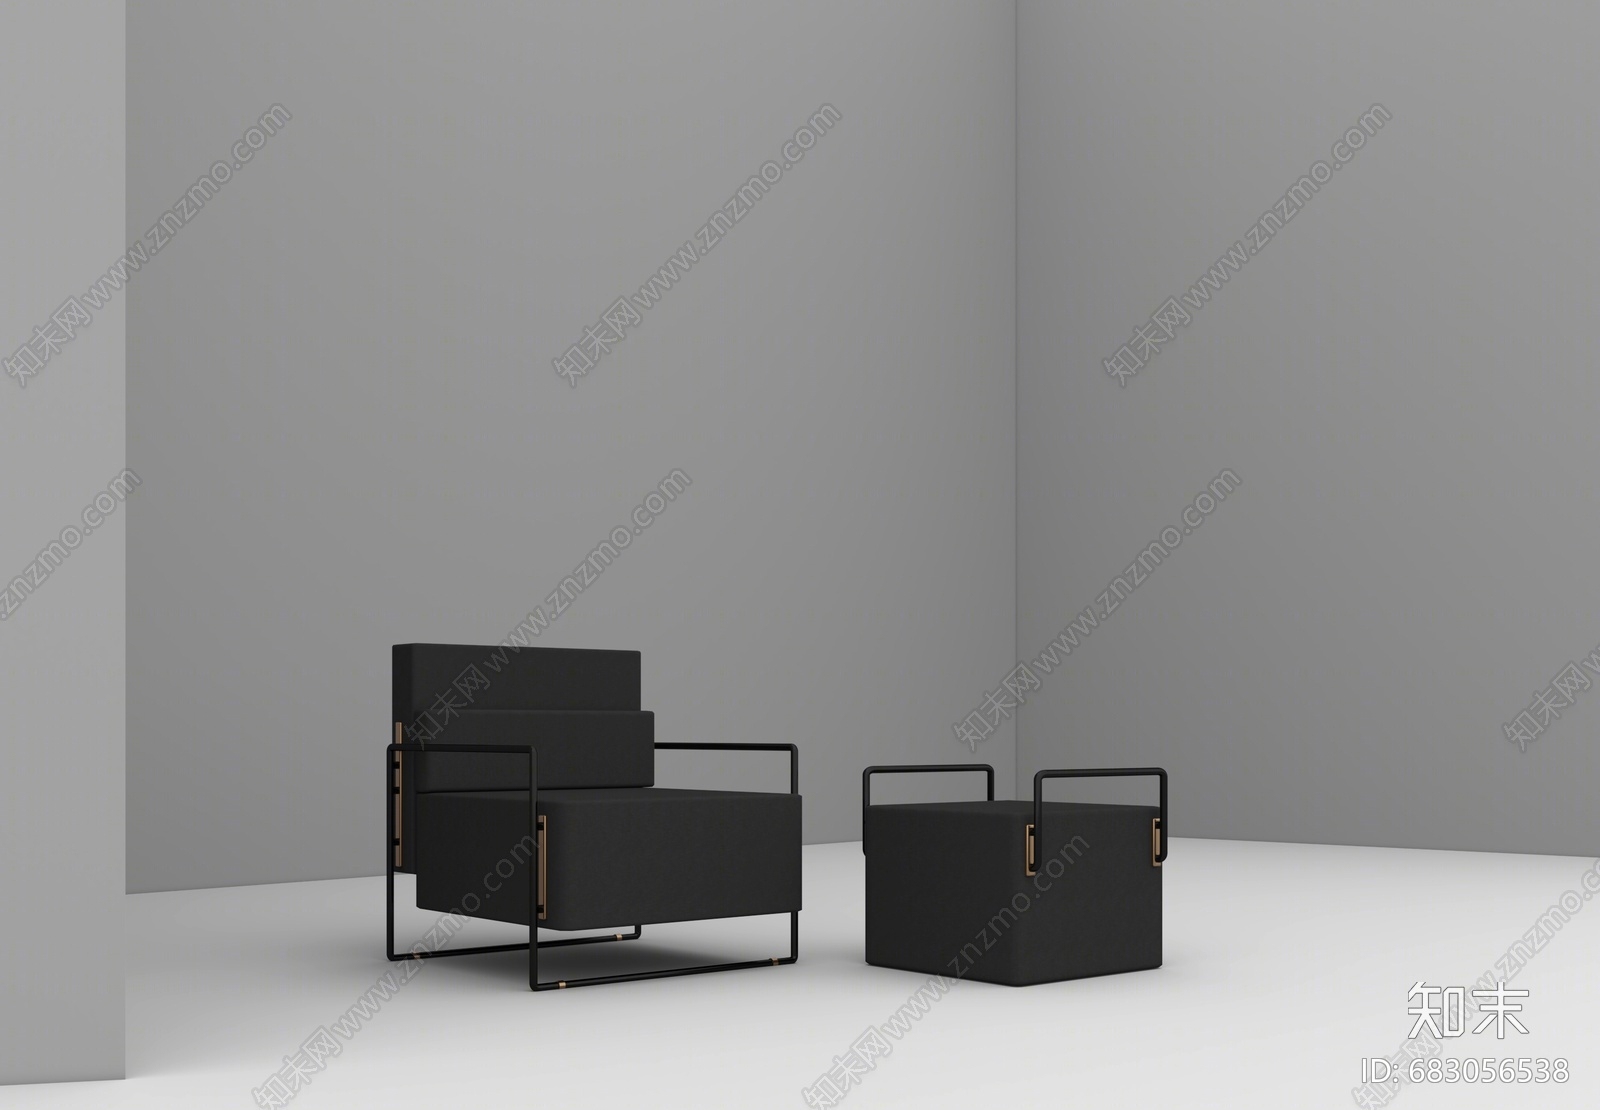 【悬赏模型】Suit现代沙发脚踏组合3D模型下载【ID:683056538】